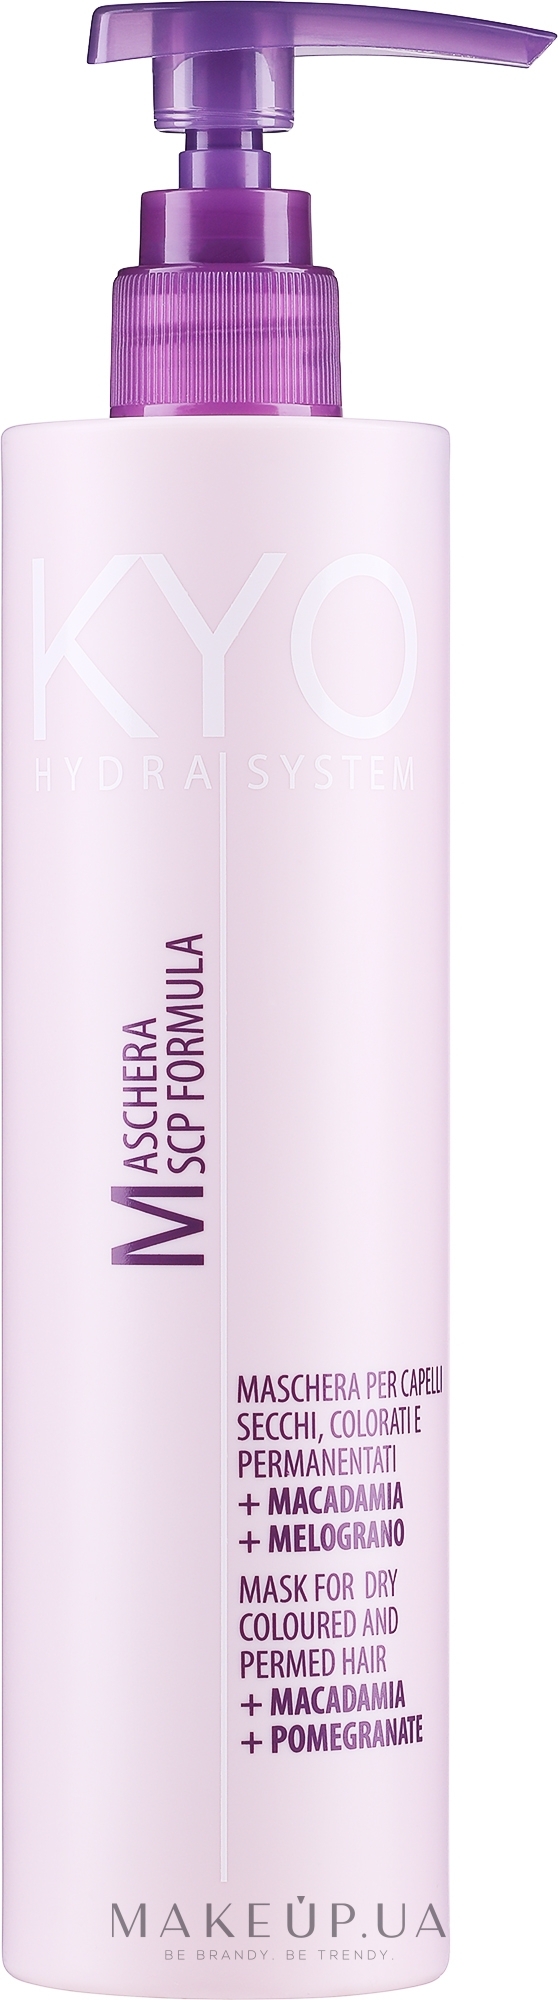 Маска для сухих окрашенных волос - Kyo Hydra System Mask For Dry Coloured And Permed Hair — фото 500ml